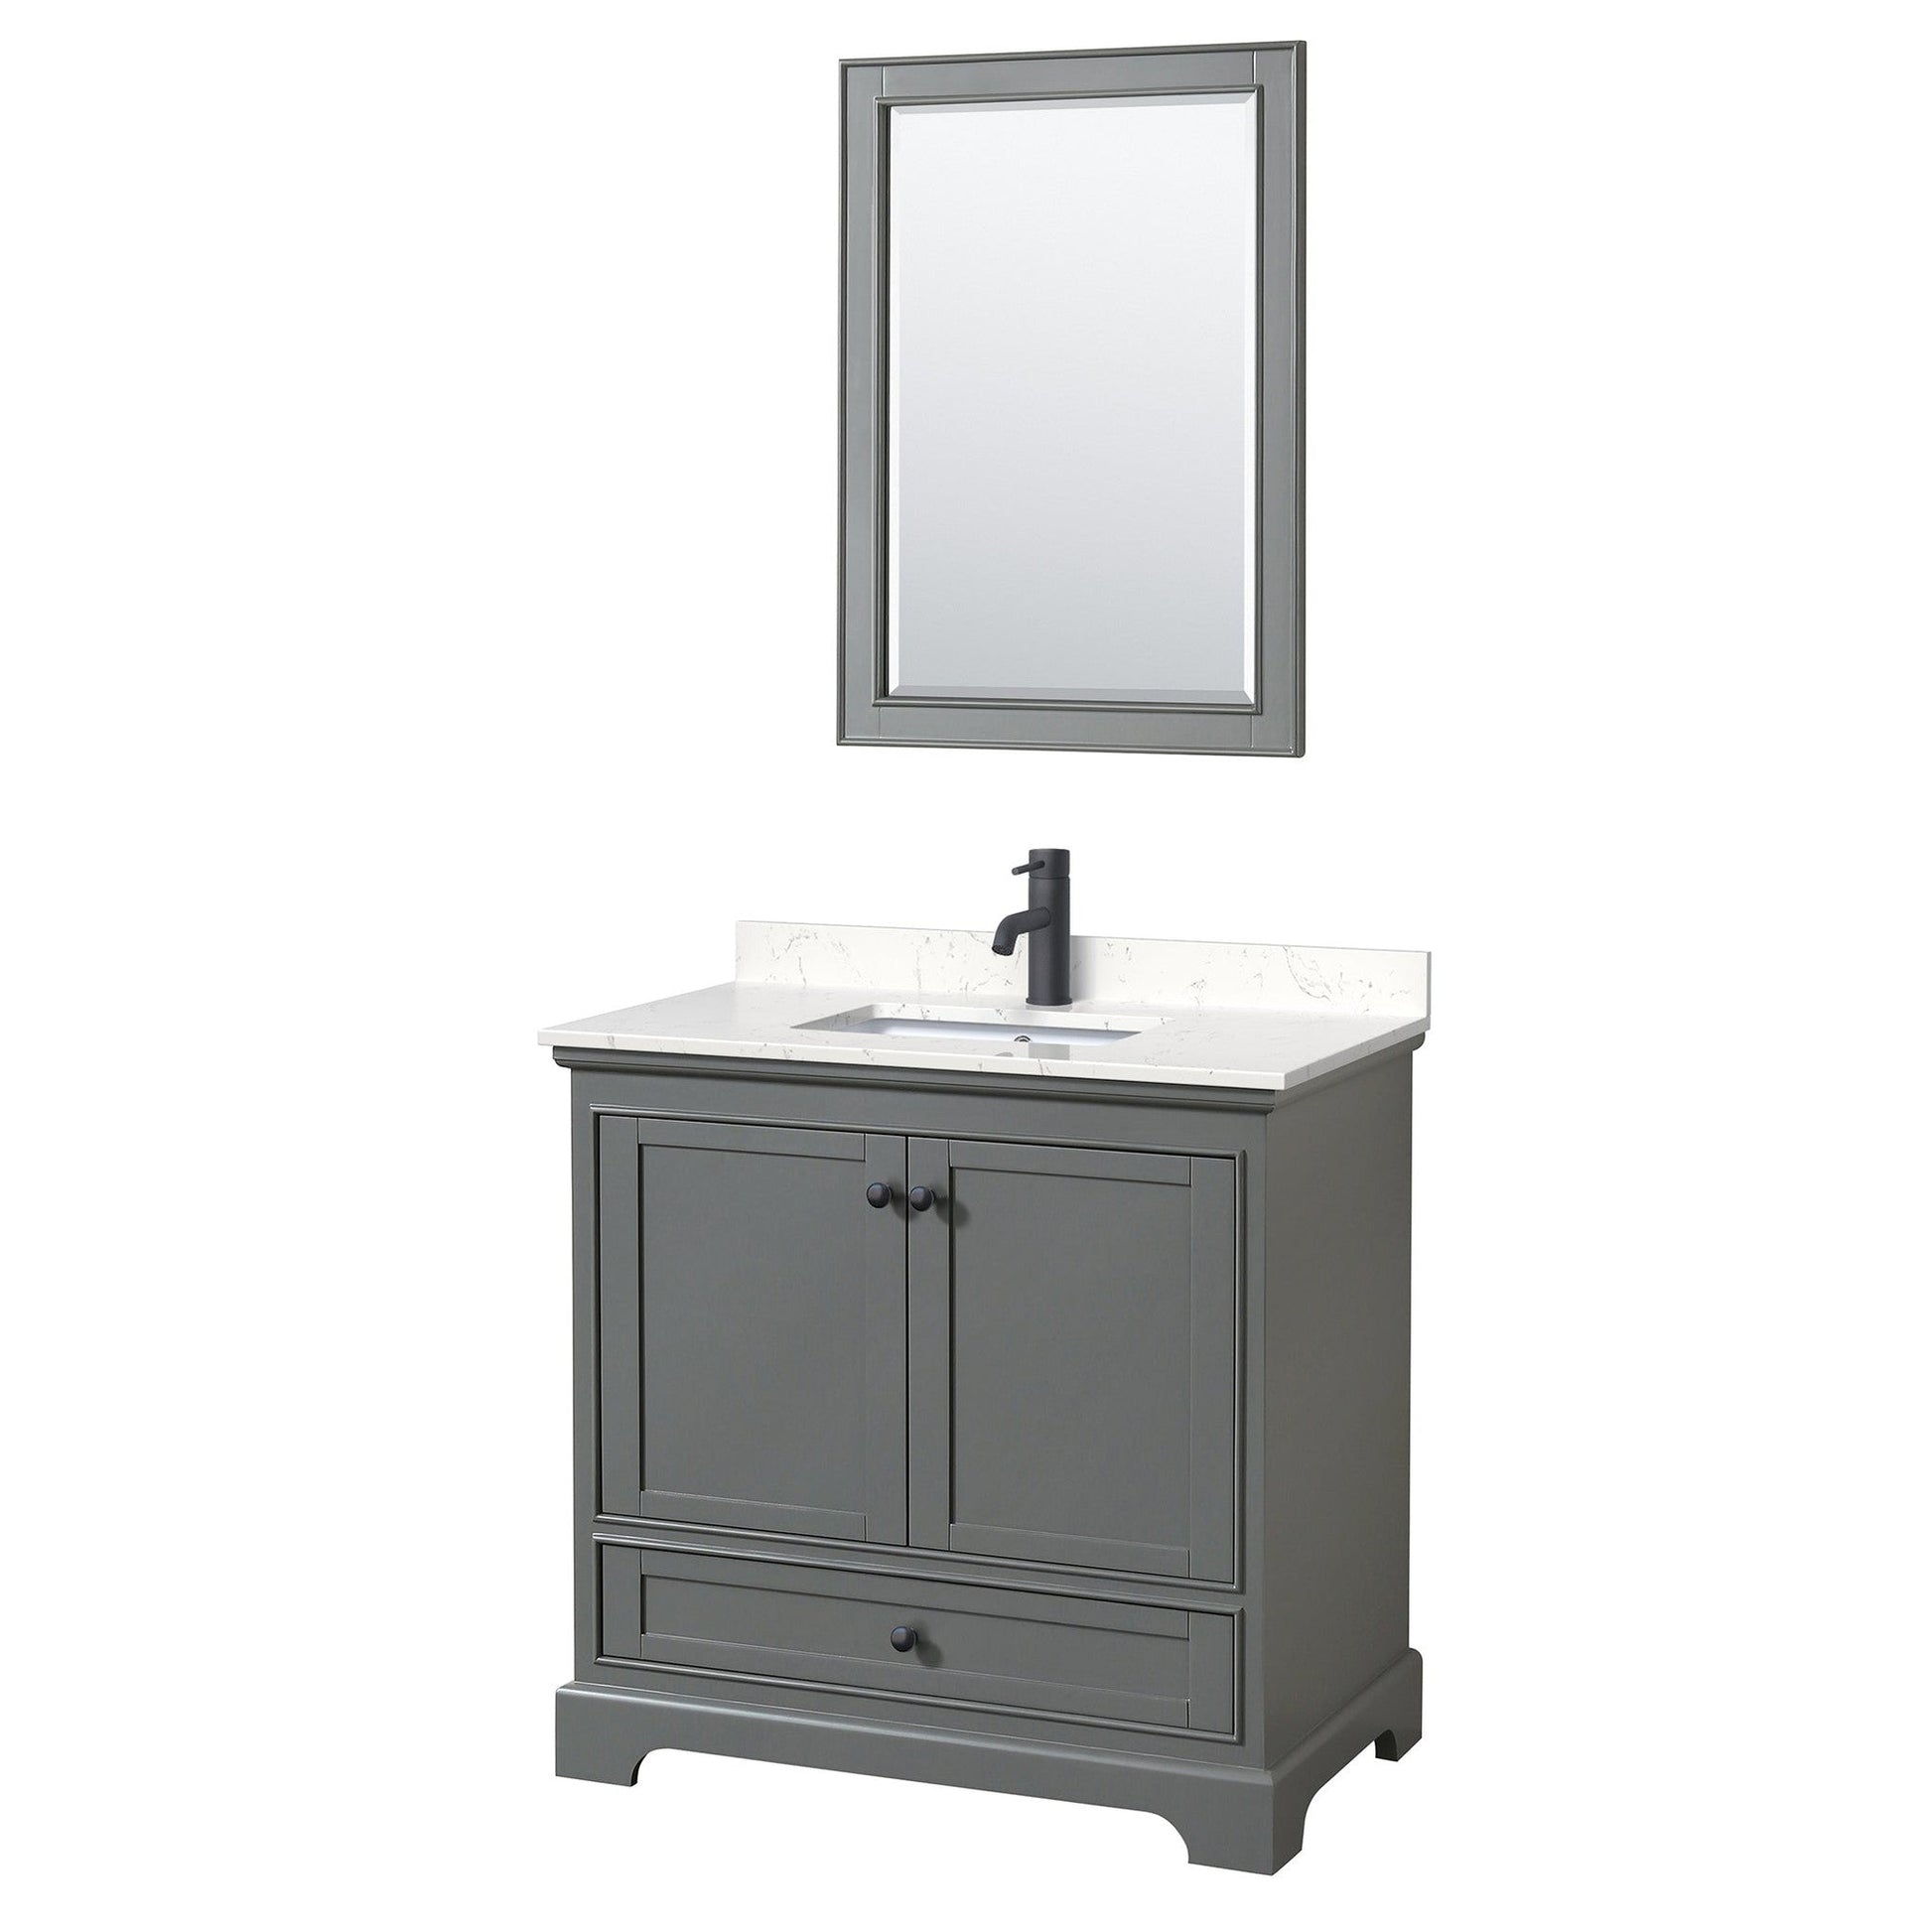 Deborah 36" Single Bathroom Vanity in Dark Gray, Carrara Cultured Marble Countertop, Undermount Square Sink, Matte Black Trim, 24" Mirror